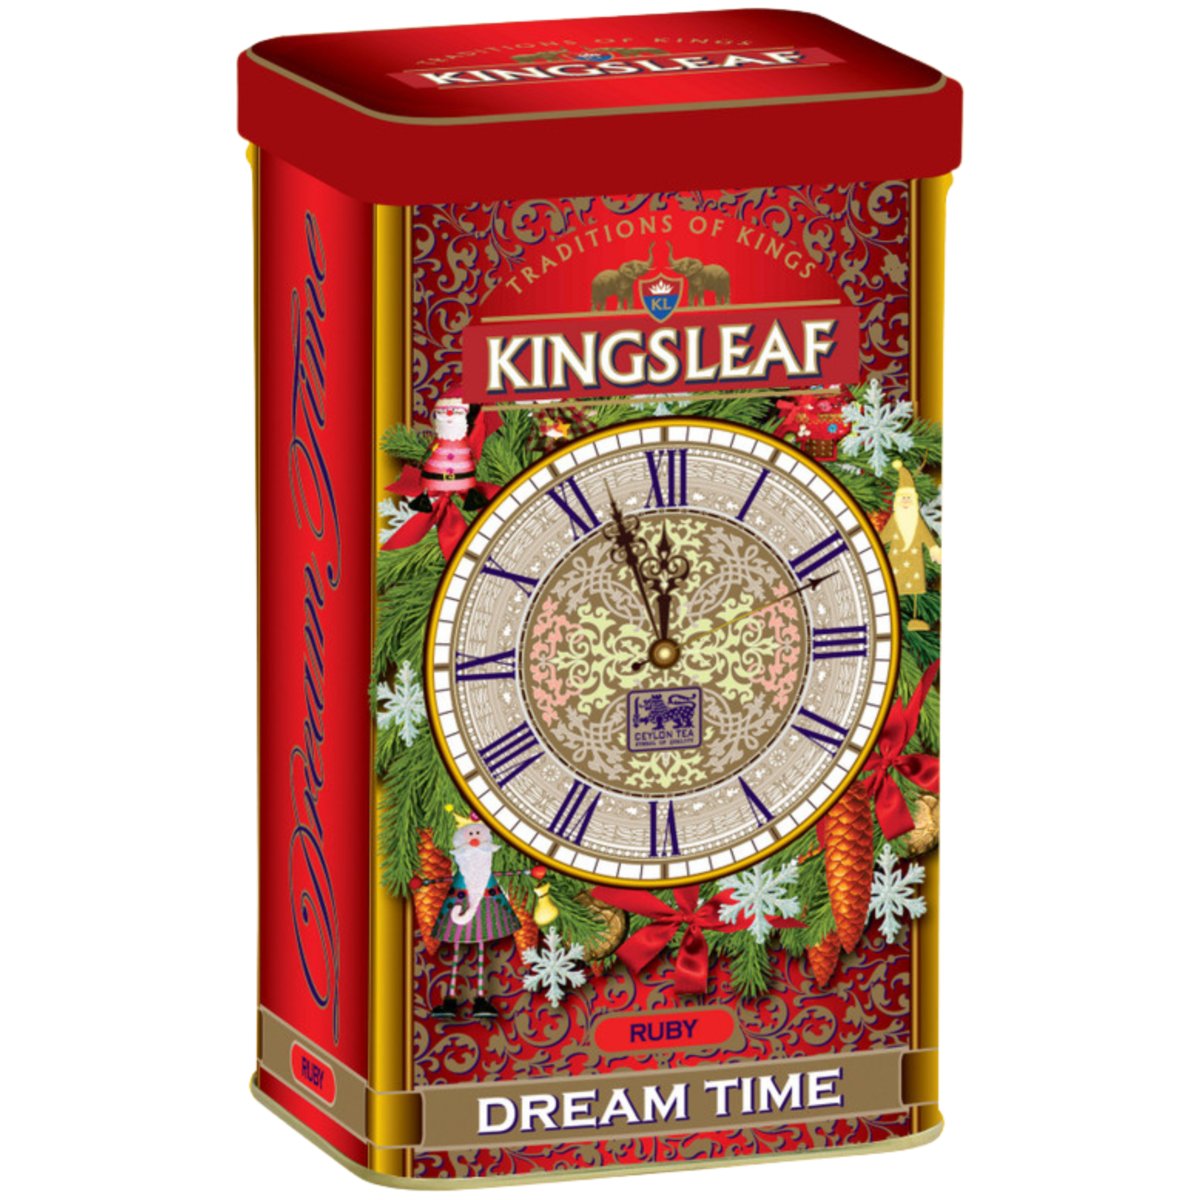 Kingsleaf DREAM TIME RUBY herbata czarna MALWA I NAGIETEK liściasta w puszce - 75 g